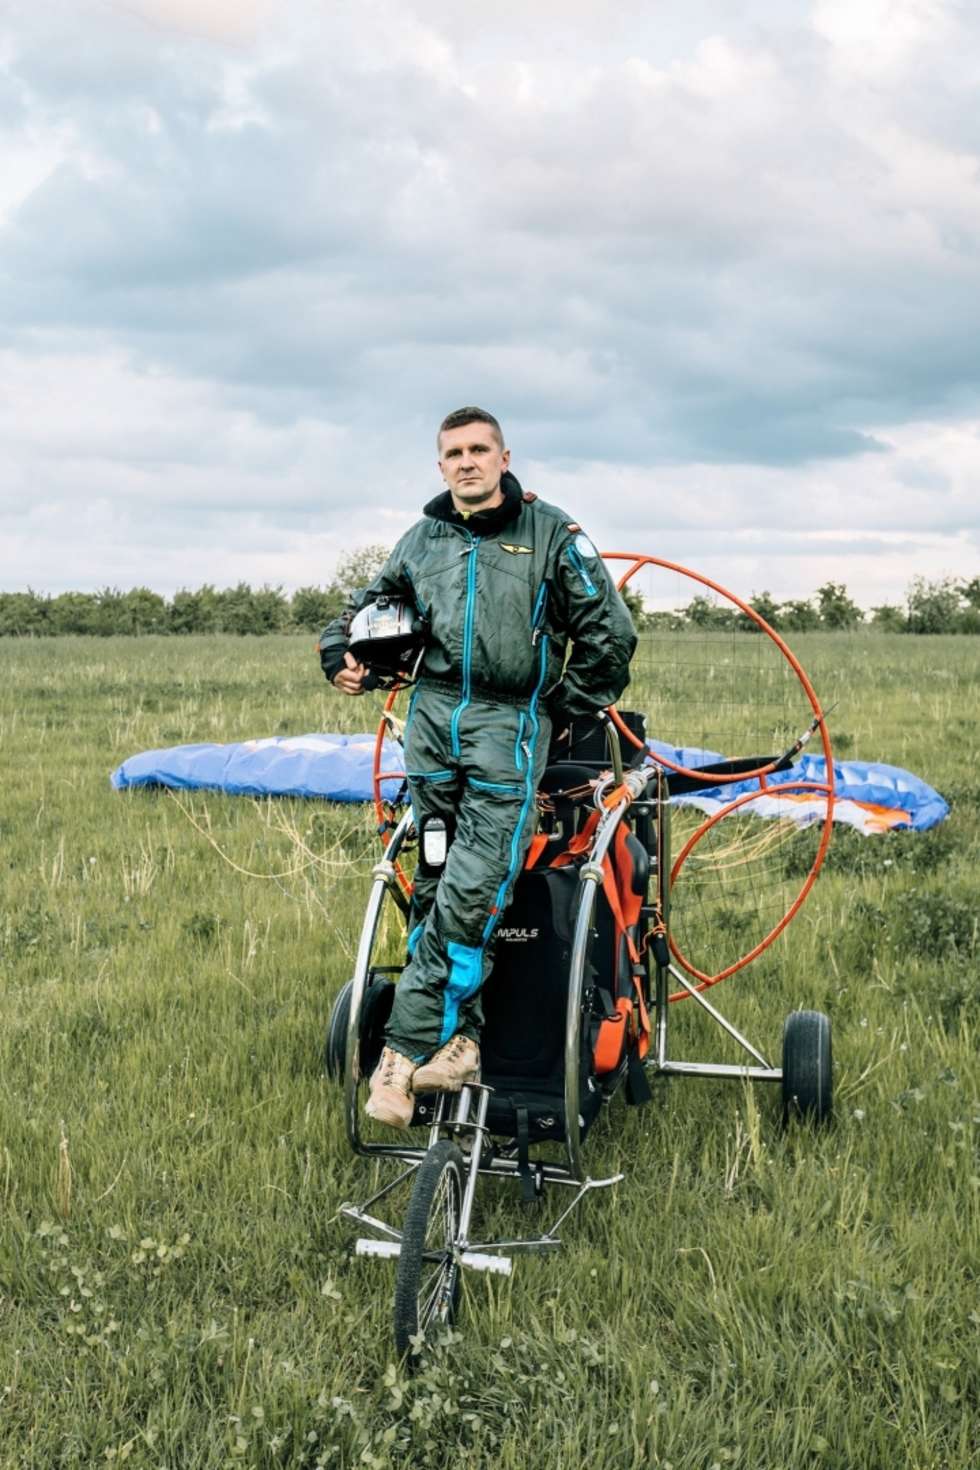  Jan Kozłowski Motoparalotniarz. Zaraża pasją do latania.